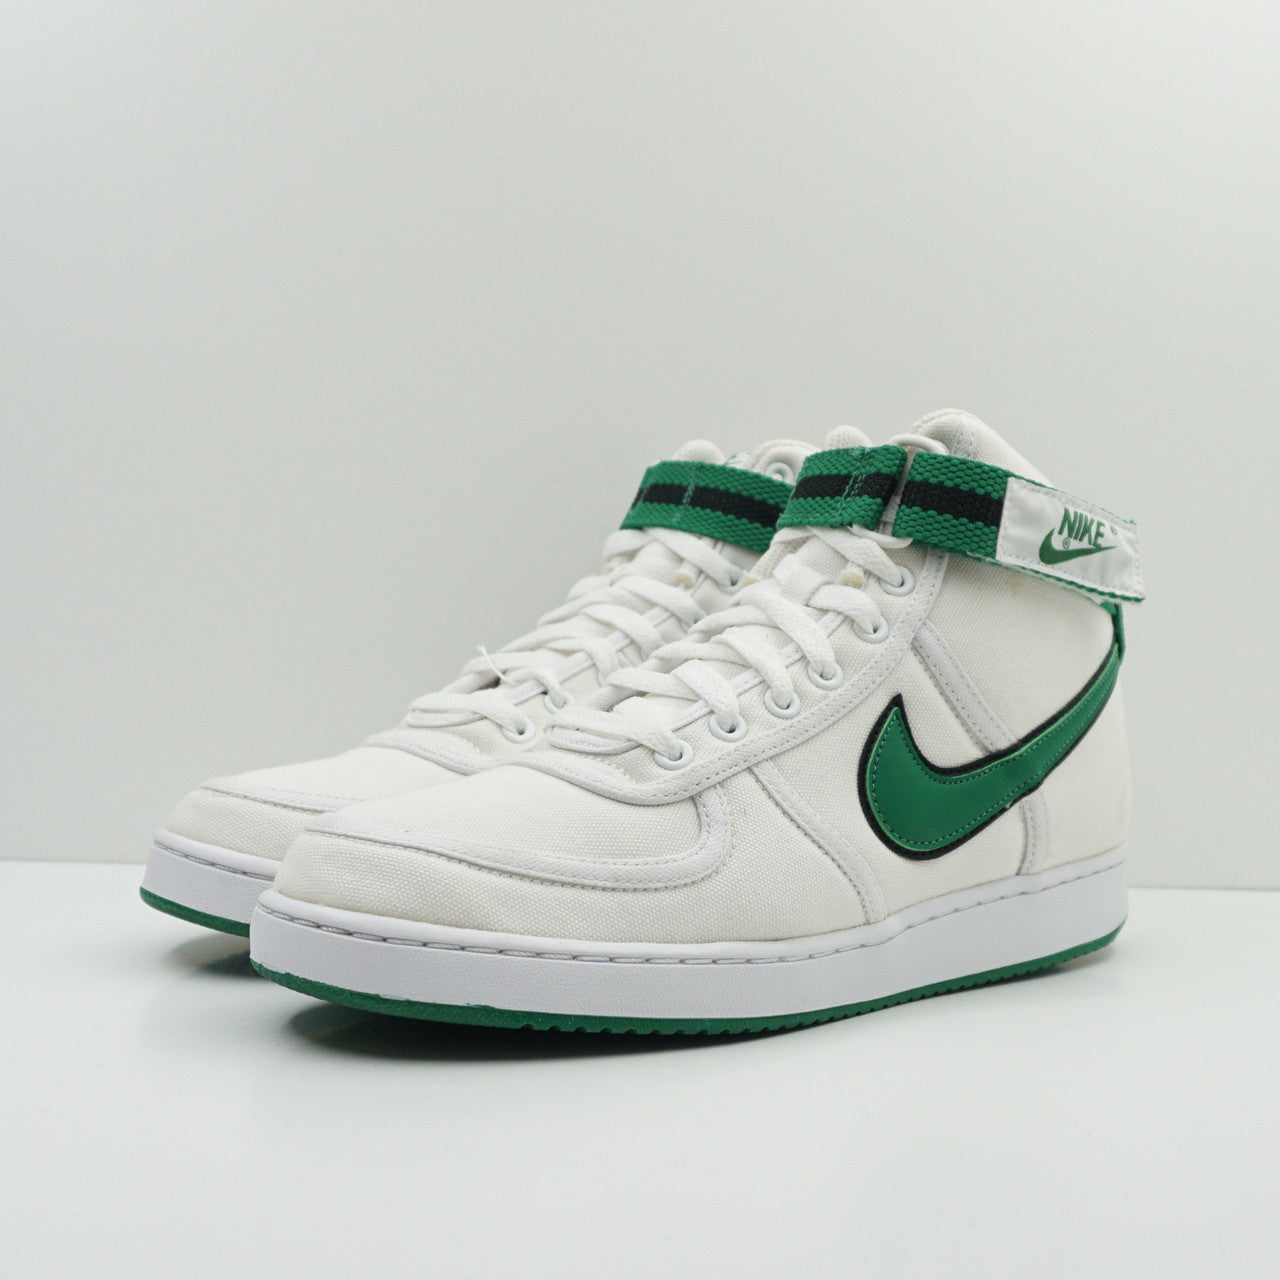 Nike Vandal High Green/White